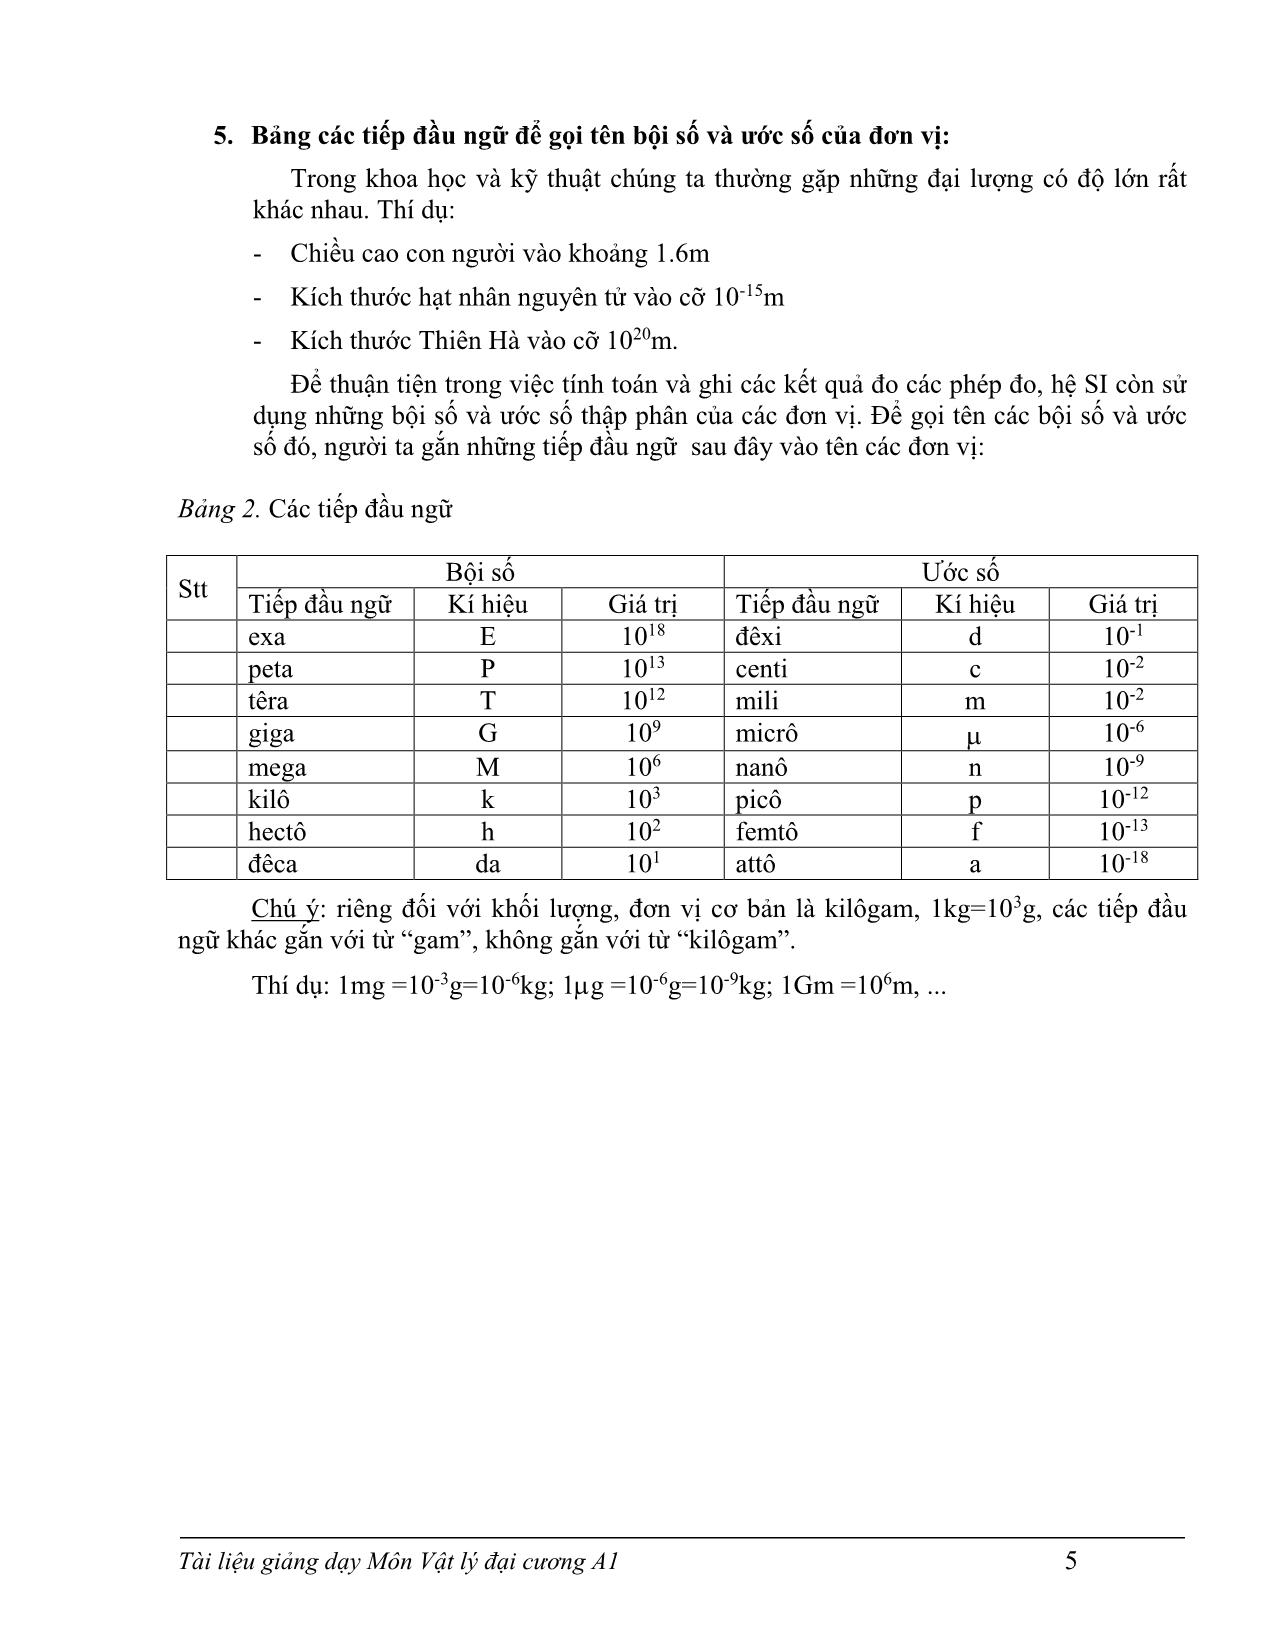 Giáo trình Vật lý đại cương A1 trang 7